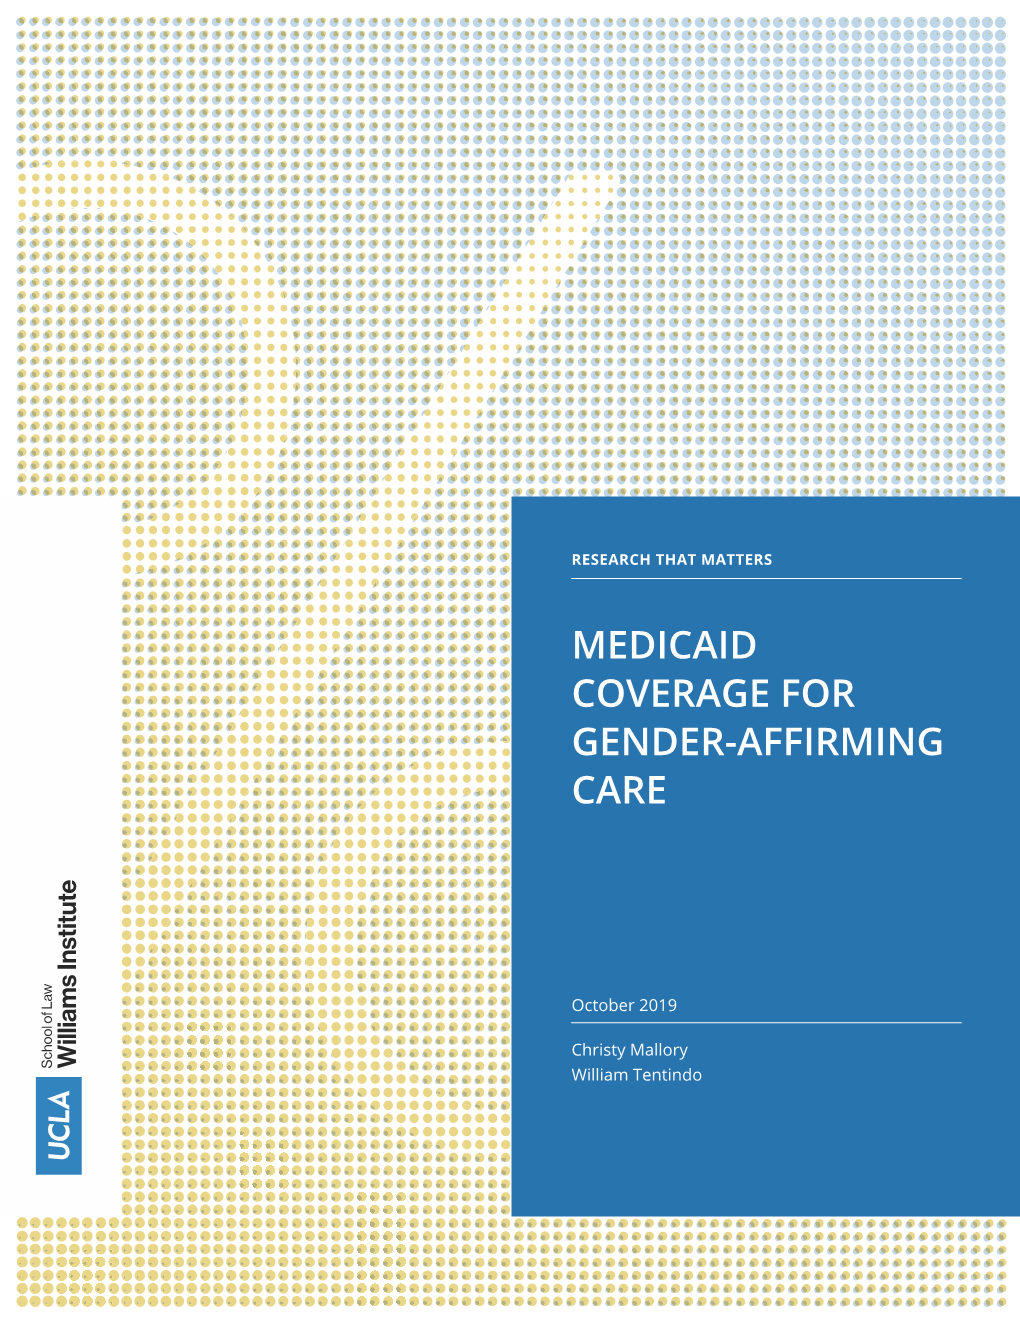 Medicaid Coverage for Gender-Affirming Care